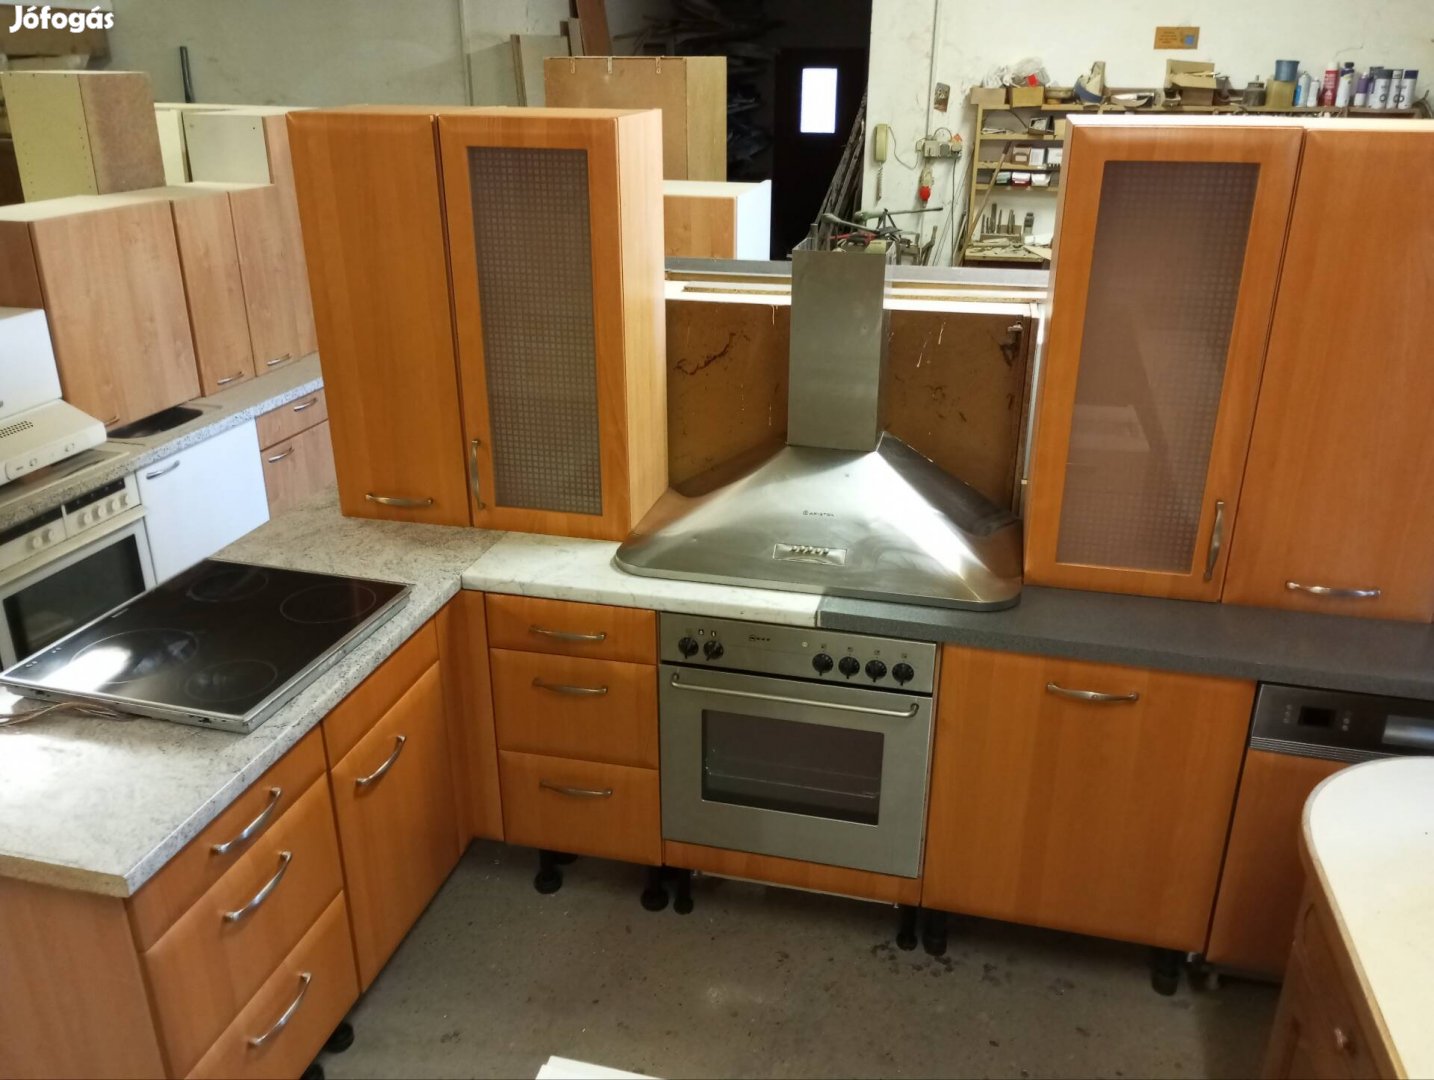 Modern fa haka konyhabútor komplett gépekkel szép állapotban 